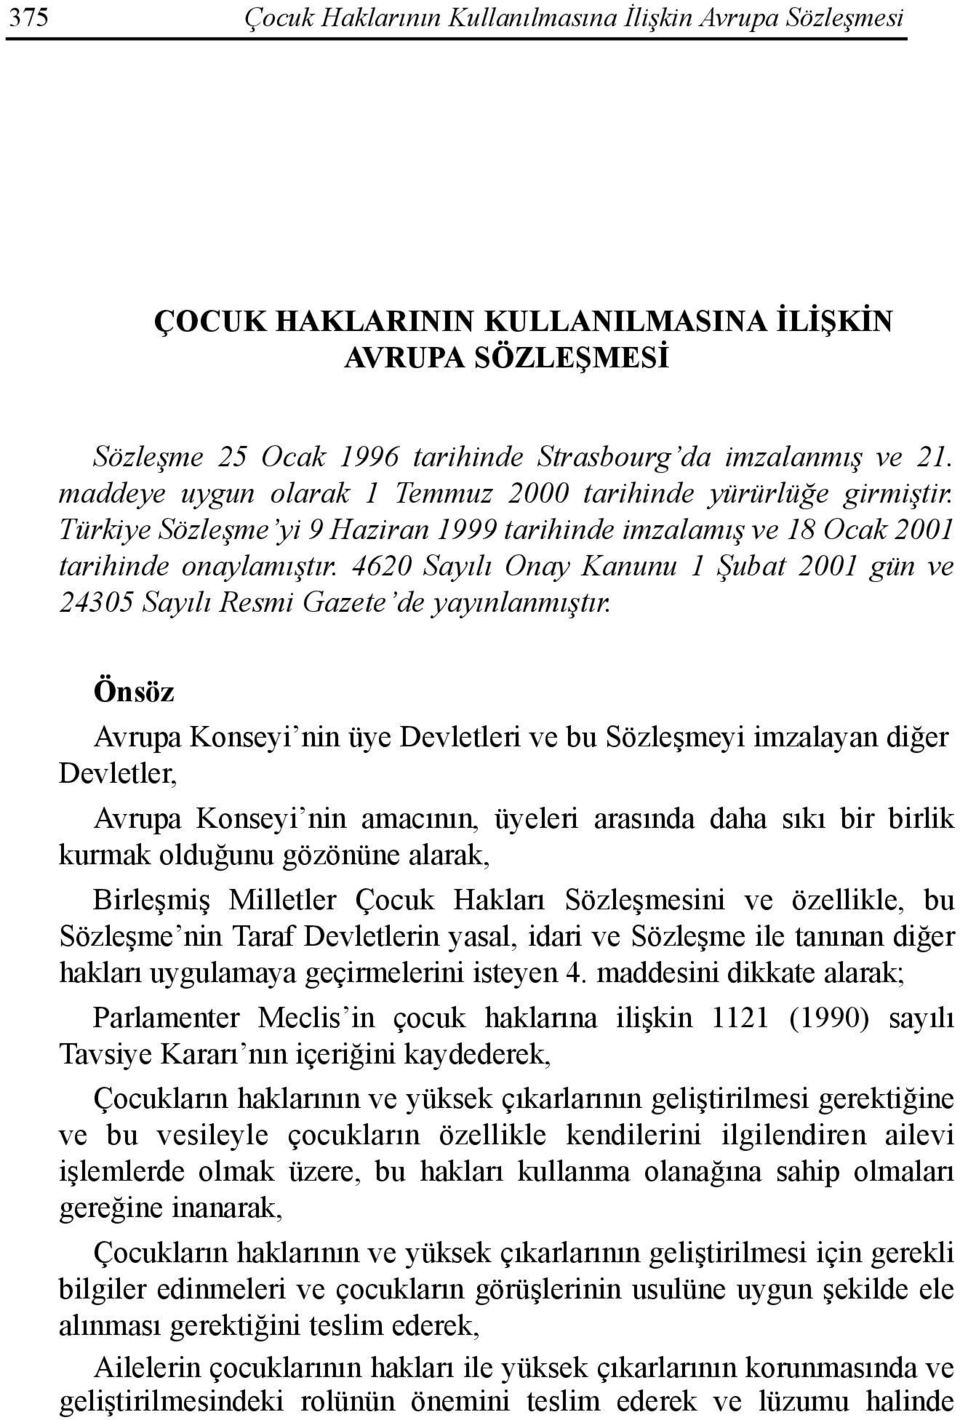 4620 Sayõlõ Onay Kanunu 1 Şubat 2001 gün ve 24305 Sayõlõ Resmi Gazete de yayõnlanmõştõr.